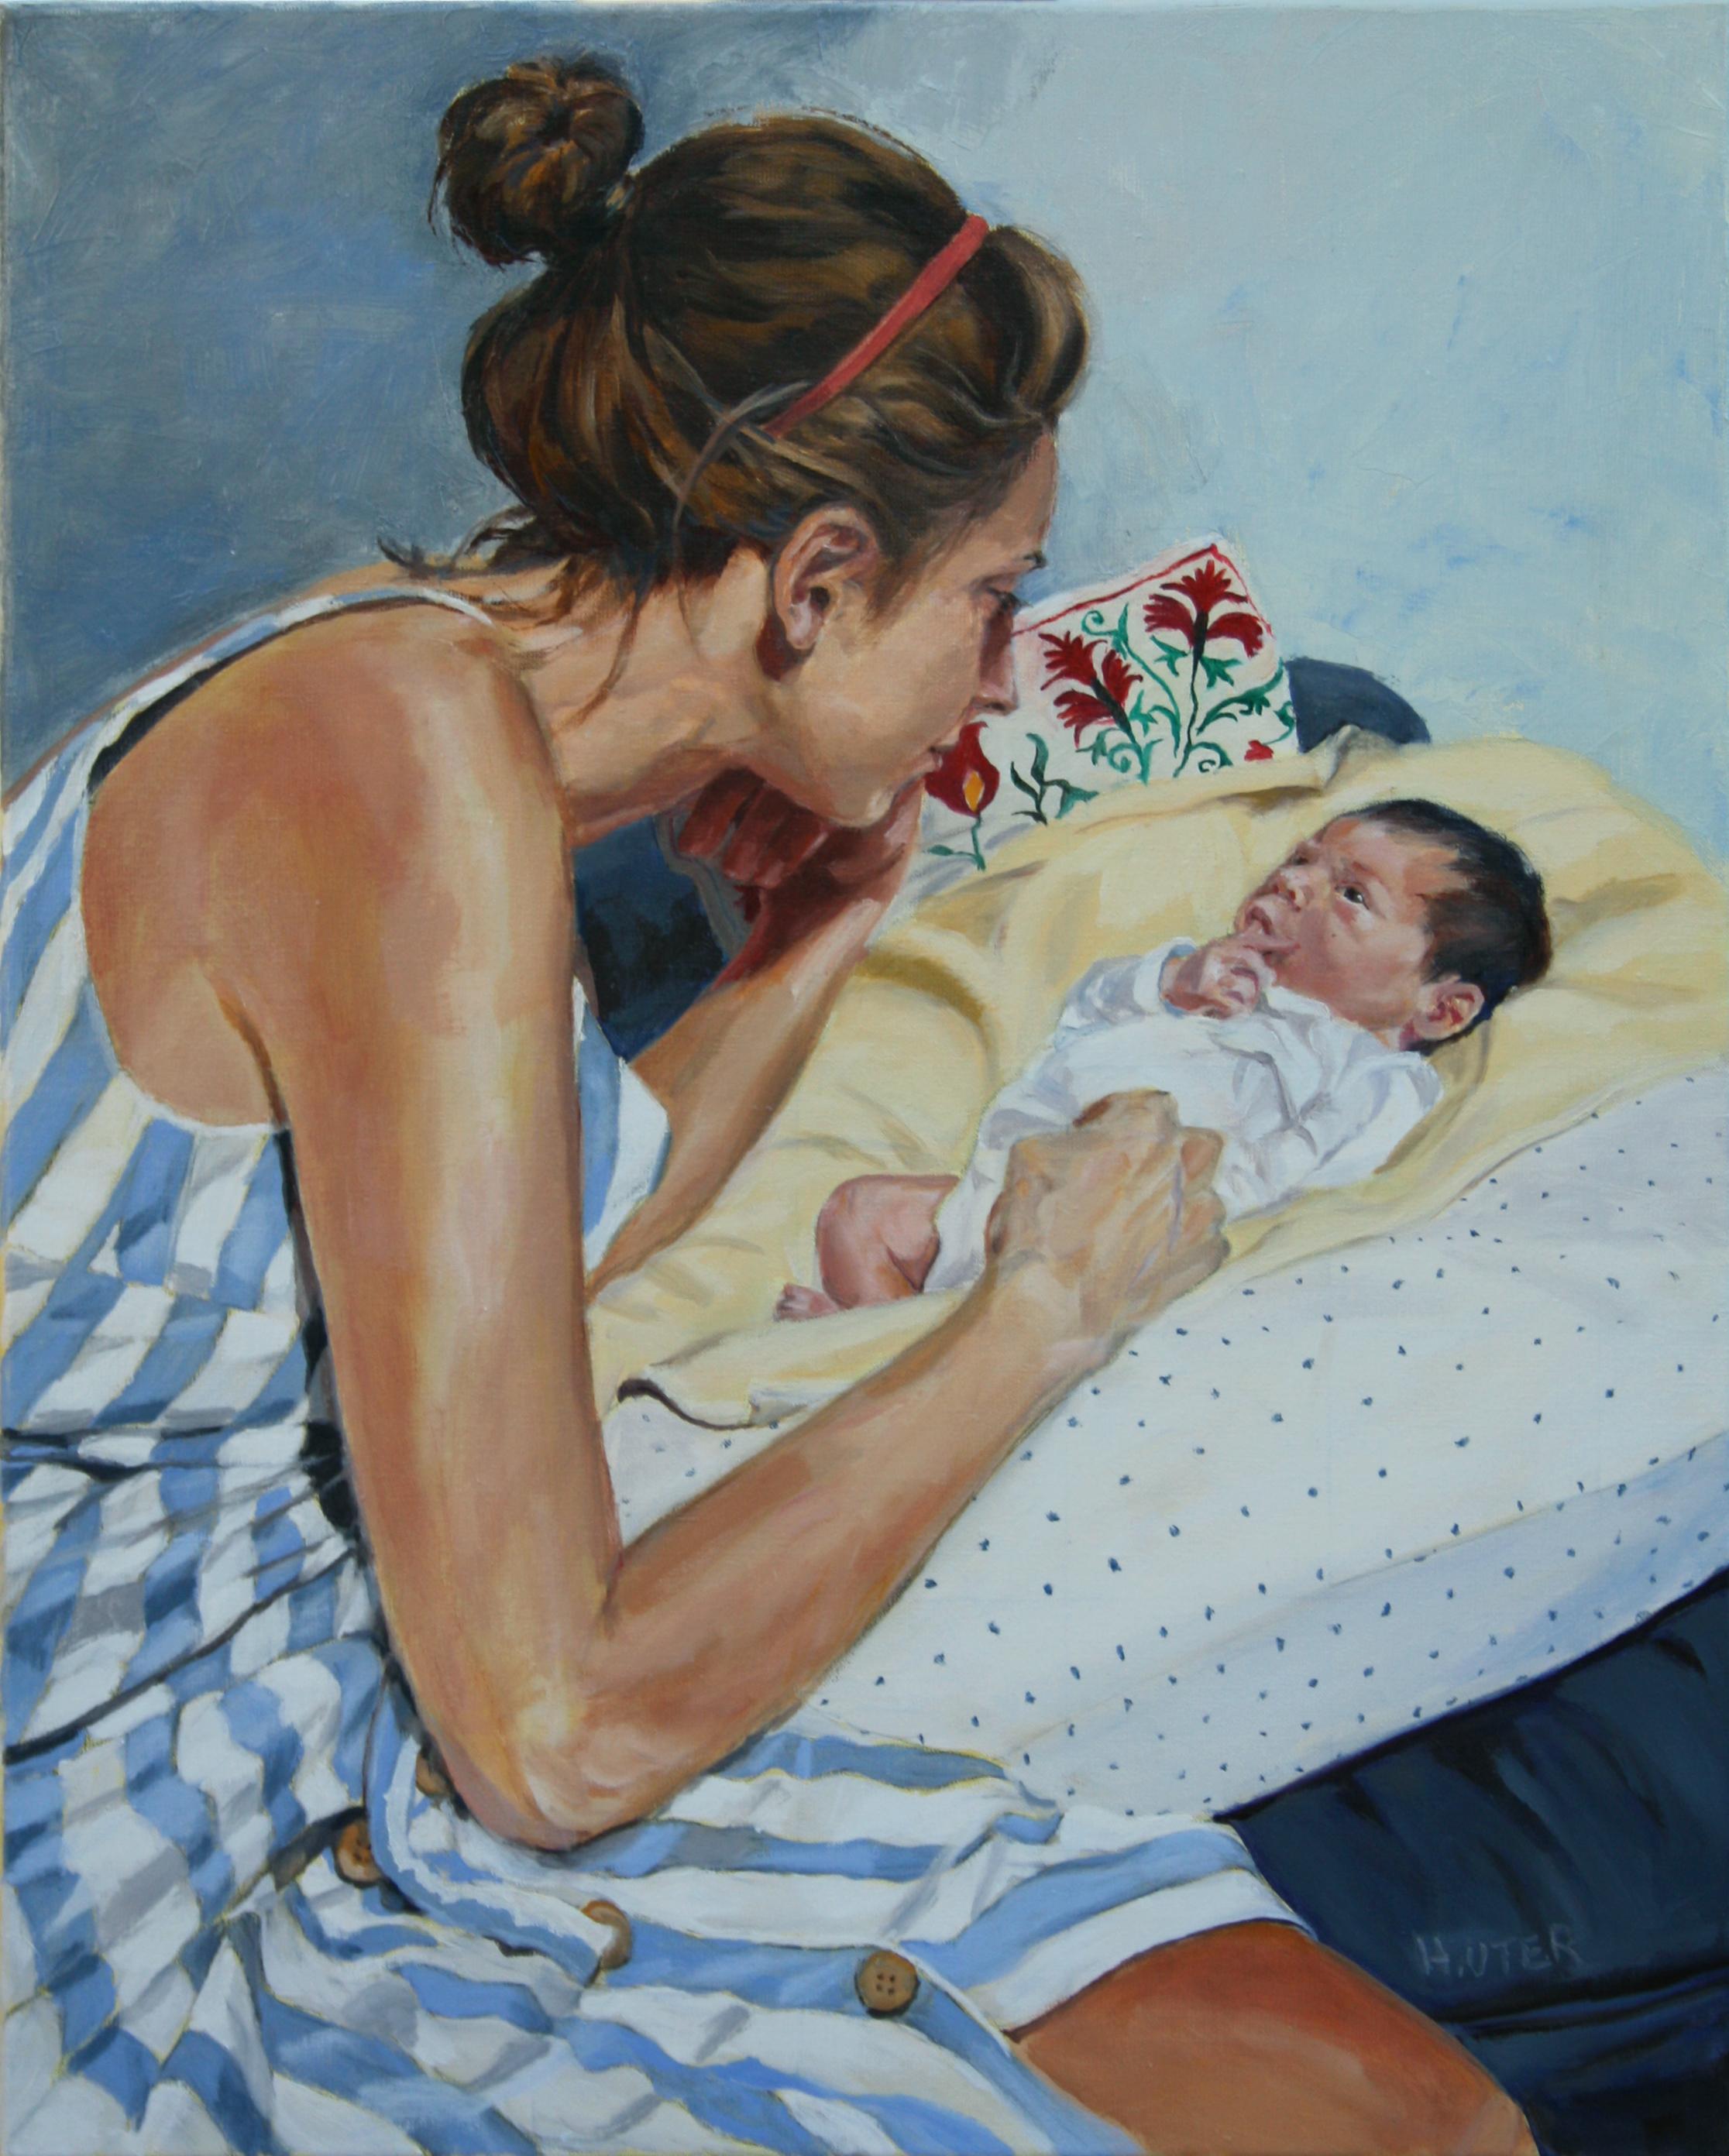 Öl auf Leinwand

Helen Uter ist eine etablierte französisch-amerikanische Malerin, die 1955 geboren wurde und in Donnery, in der Nähe von Orléans, Frankreich, lebt und arbeitet. In ihren Werken, die stark von Edward Hopper beeinflusst sind, setzt